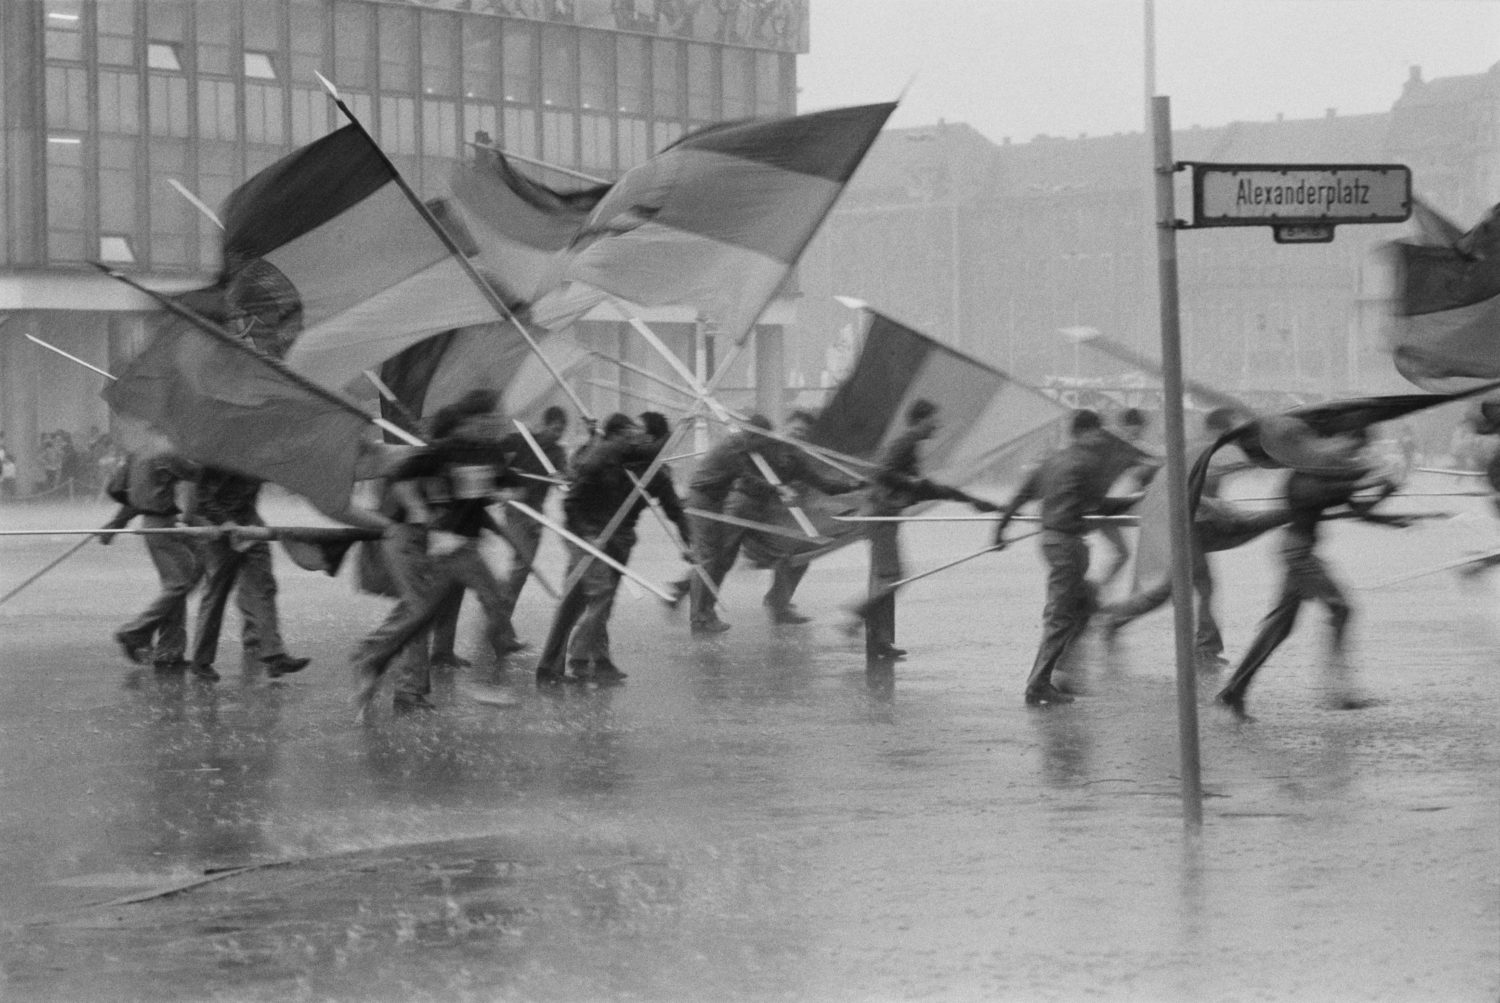 "Fahnenflucht", 1. Mai Demonstration auf dem Alexanderplatz, Berlin-Mitte, 1987, DDR.